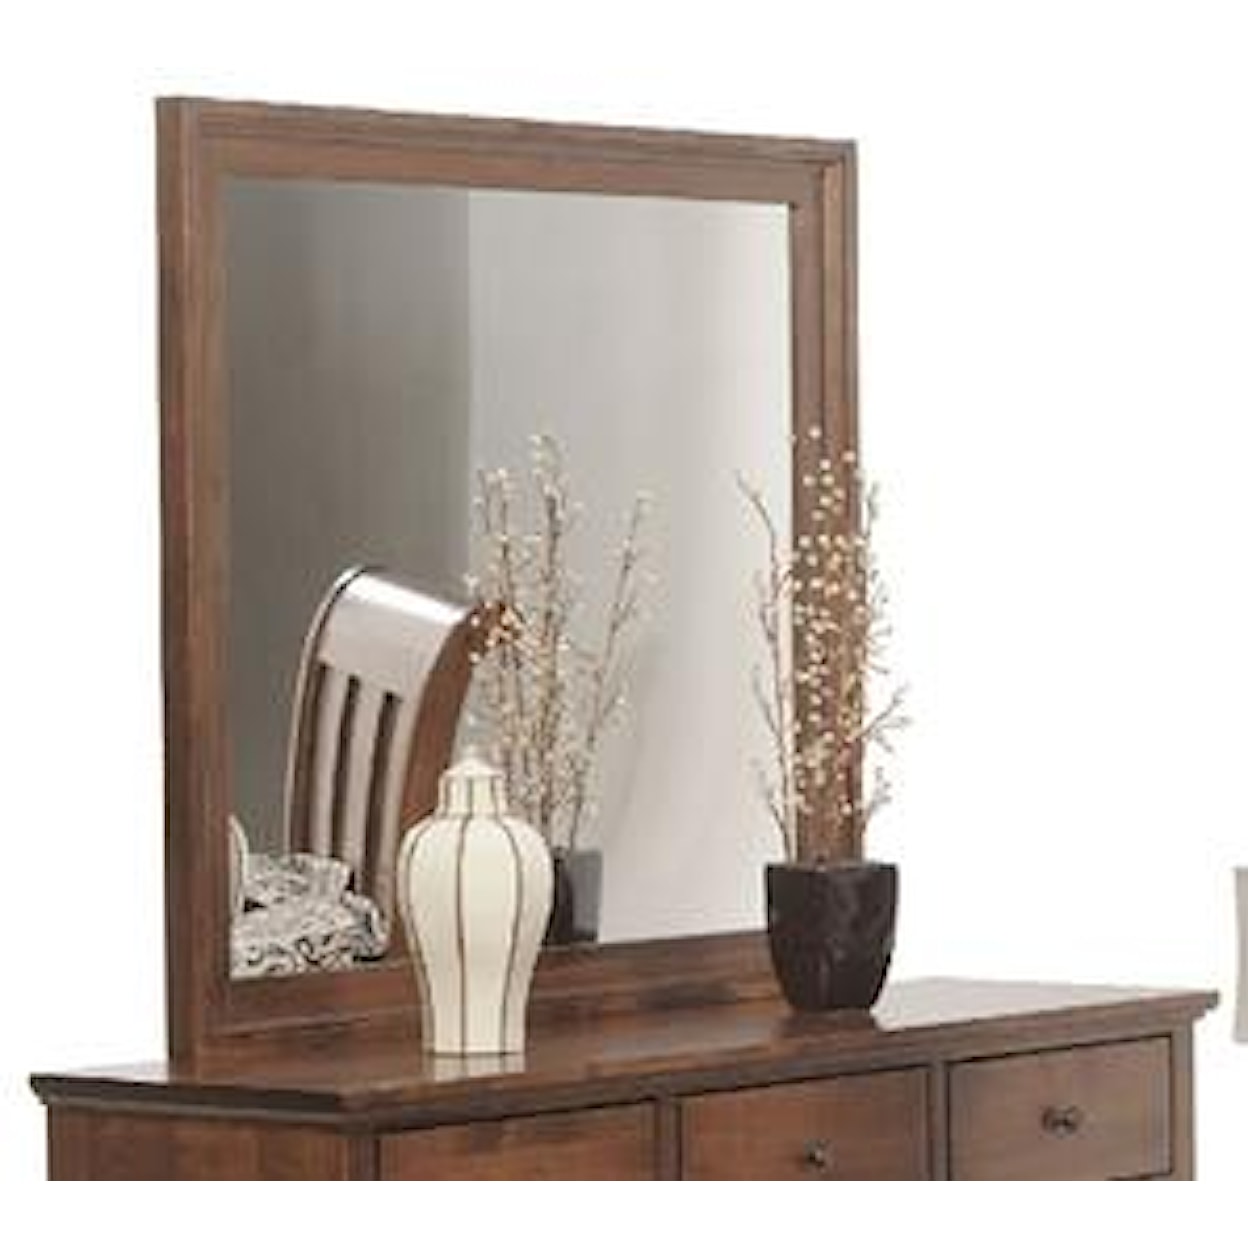 Yutzy - Urban Collection Wrightsville Dresser Mirror